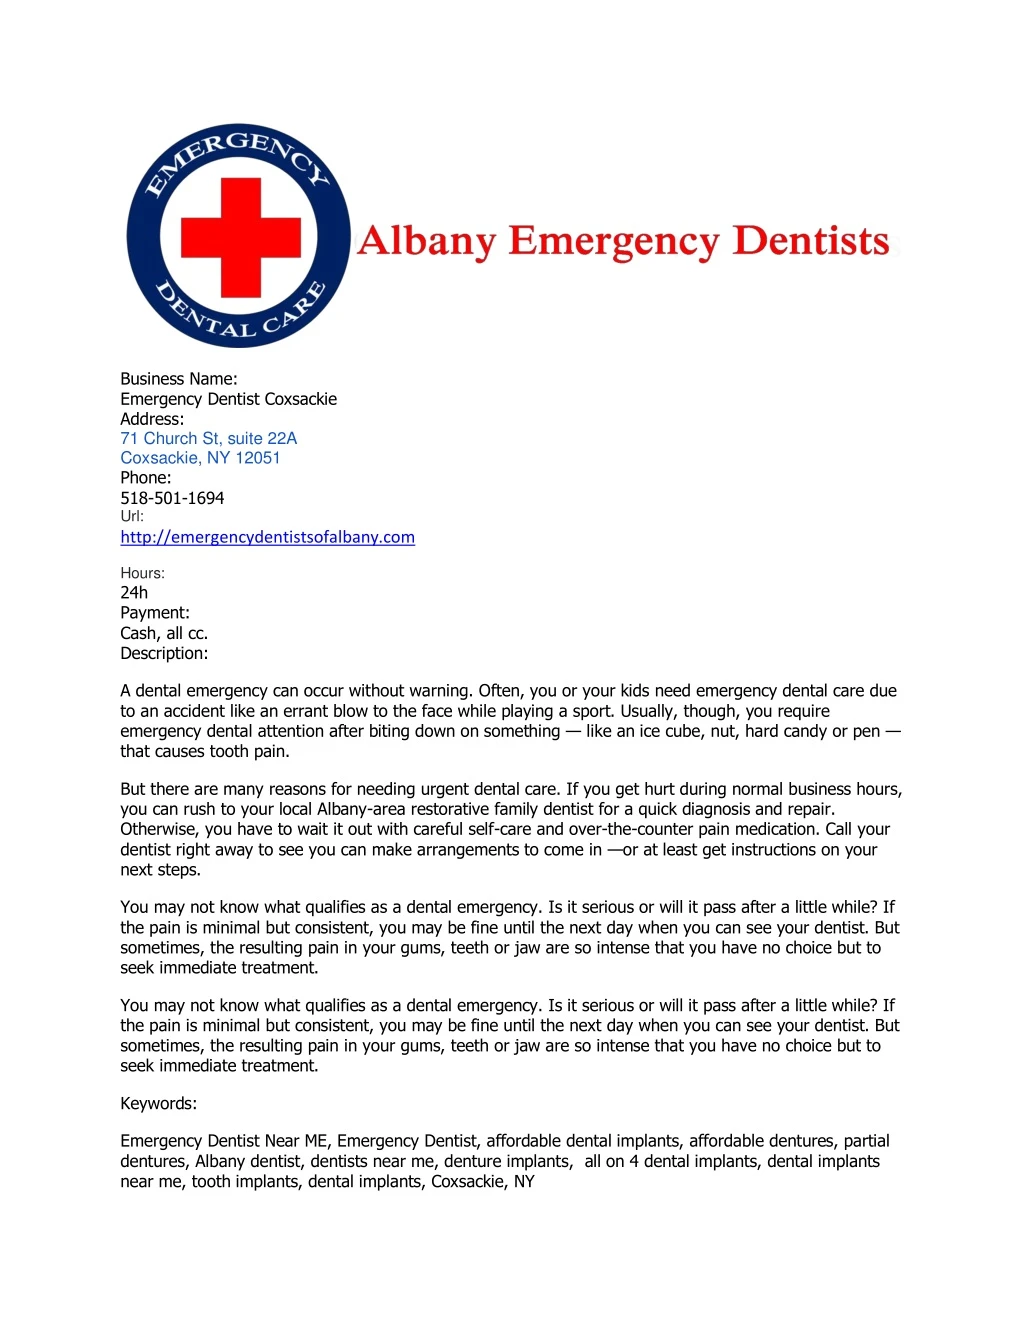 business name emergency dentist coxsackie address